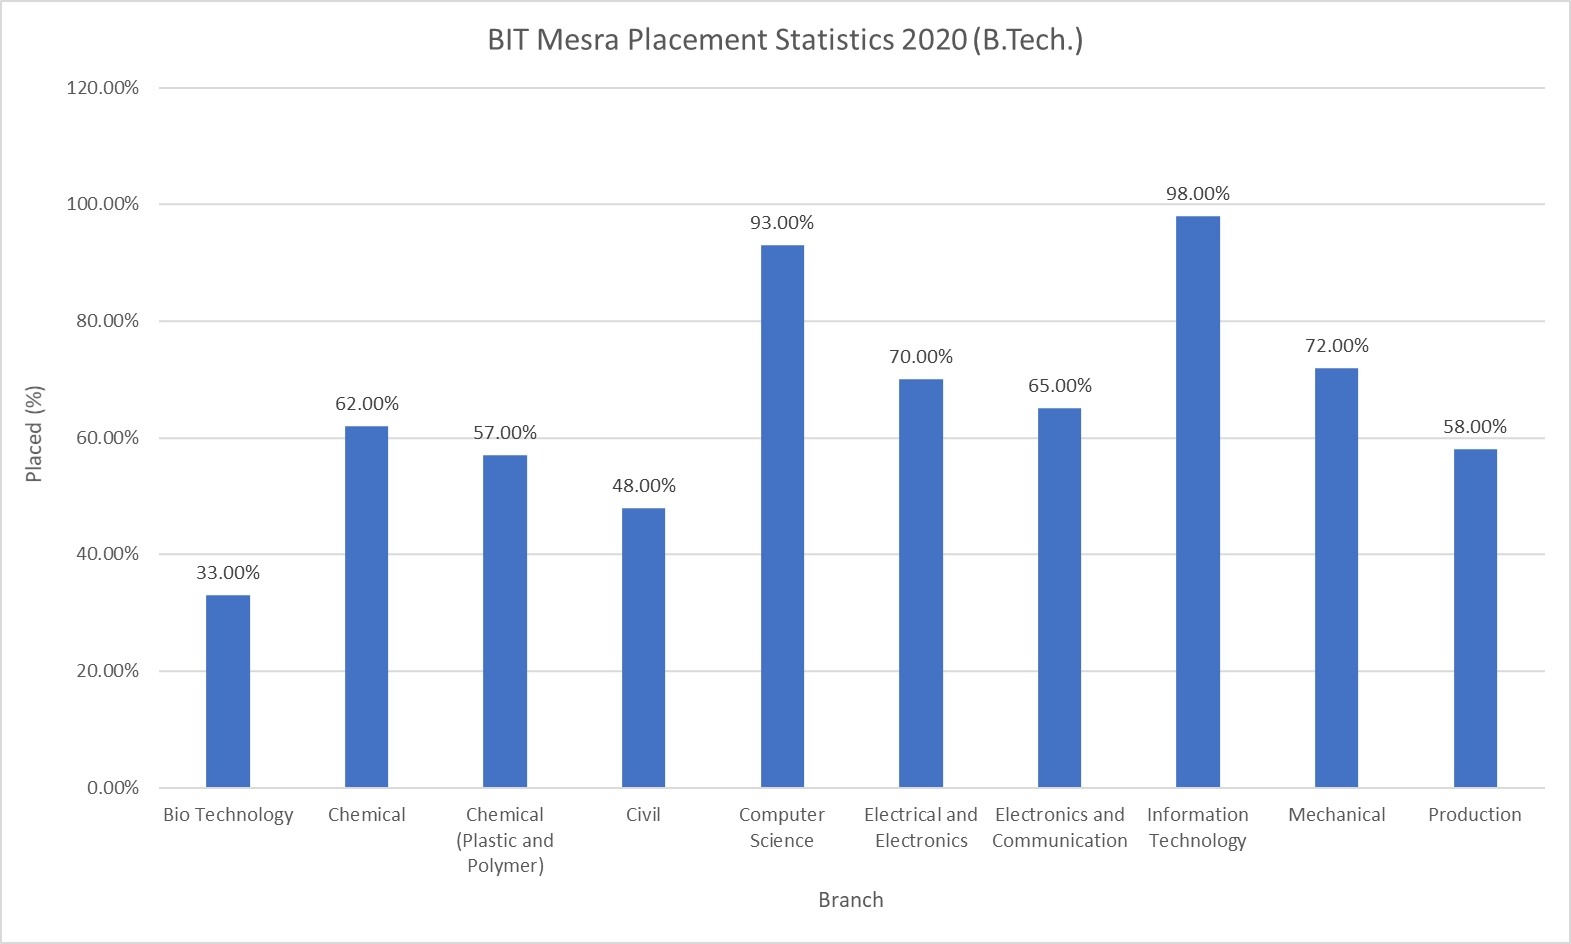 BIT Mesra Placement Statistics 2020 B.Tech